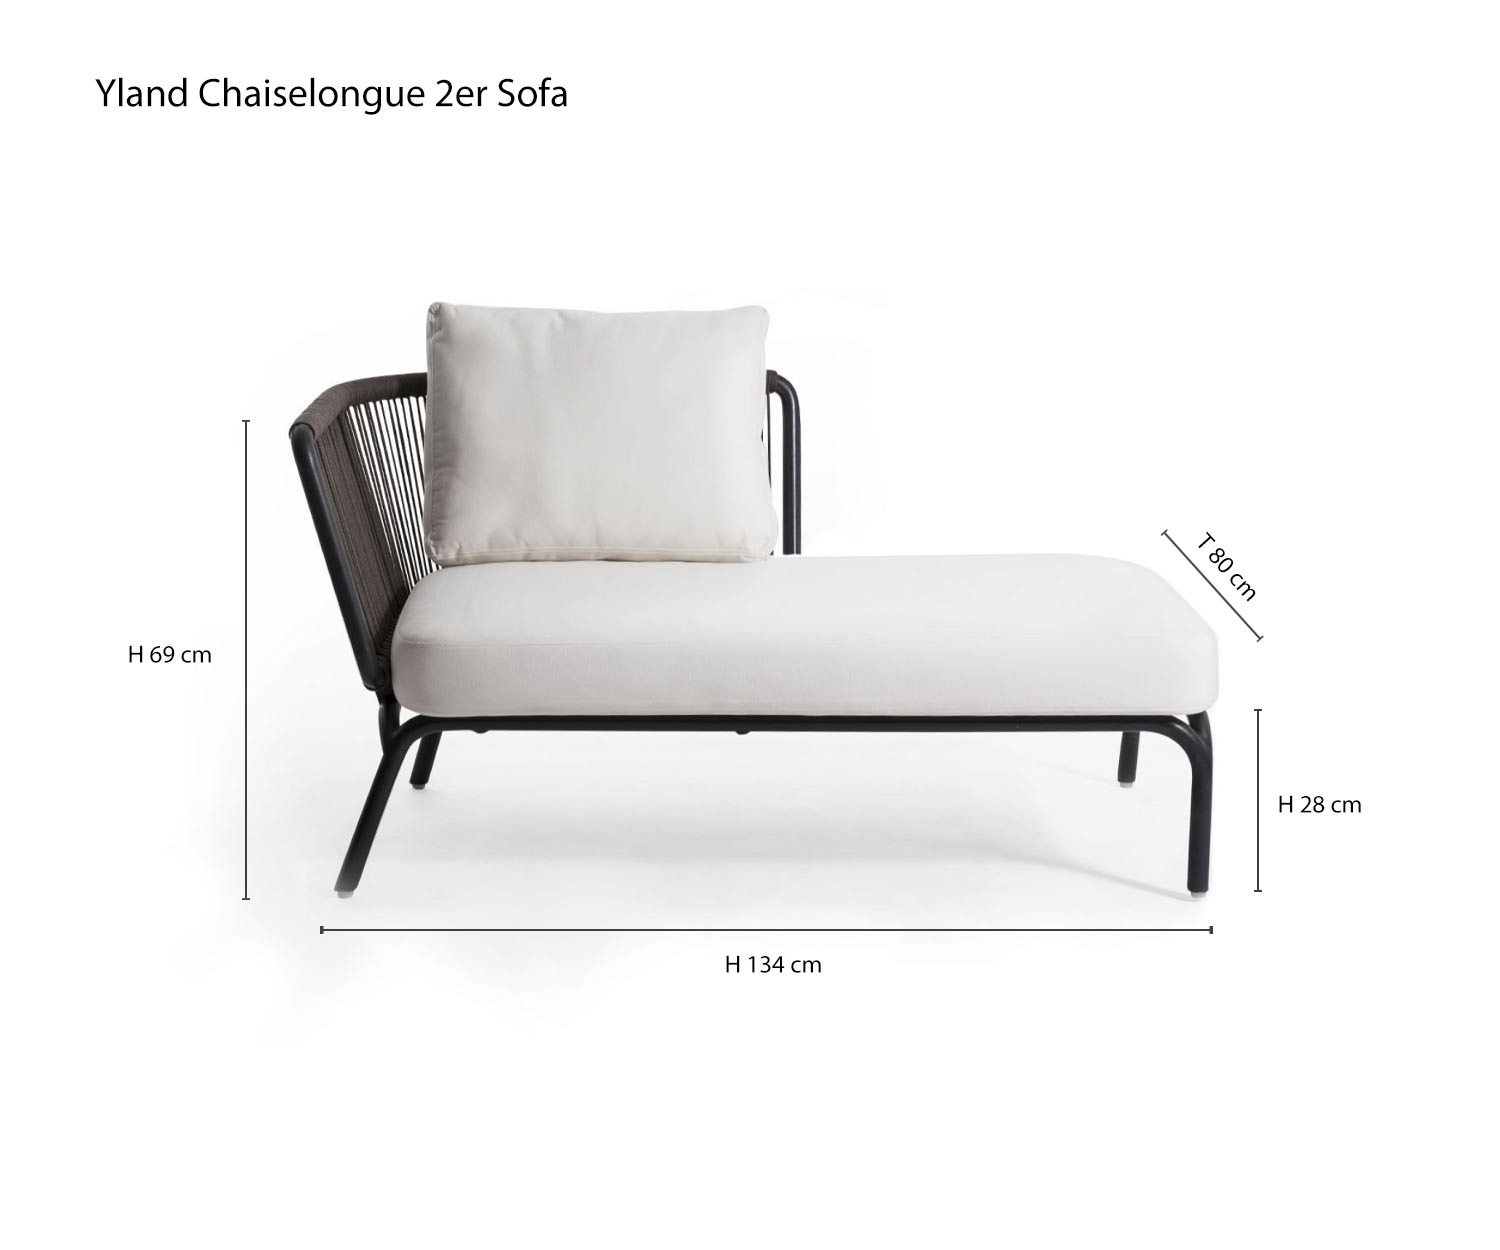 Chaiselongue 2er Designer Sofa Yland von Oasiq Skizze Maße Größen Größenangaben